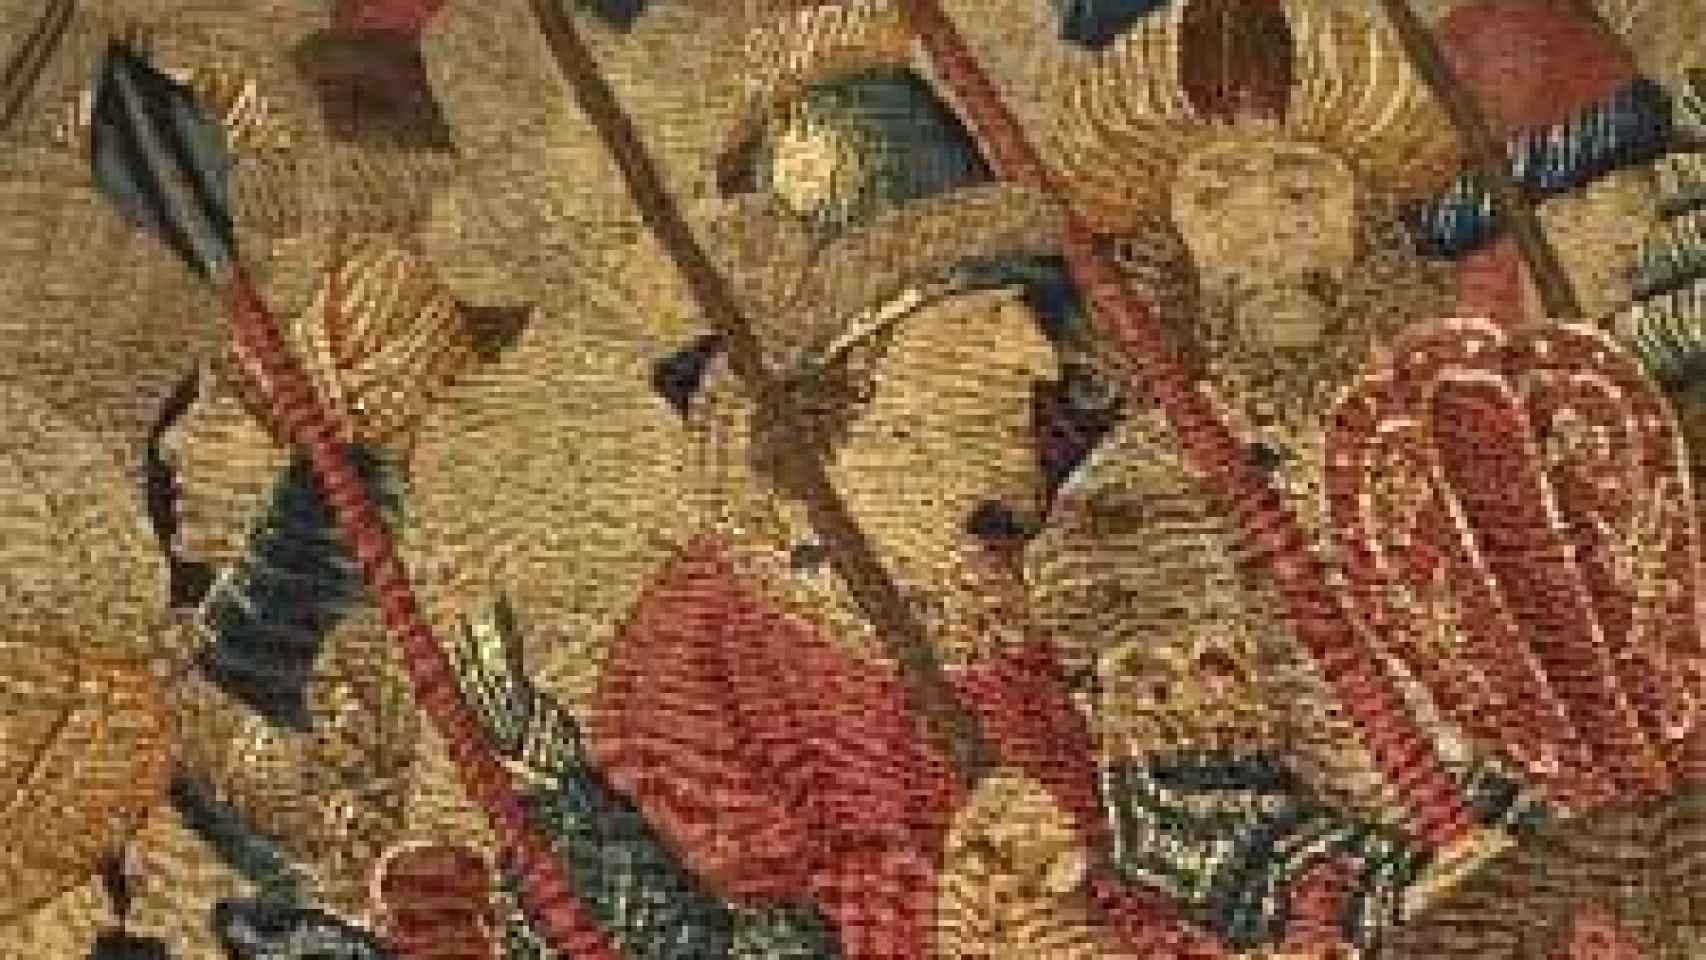 Image: Bruselas muestra cuatro tapices restaurados de la Colegiata de Pastrana